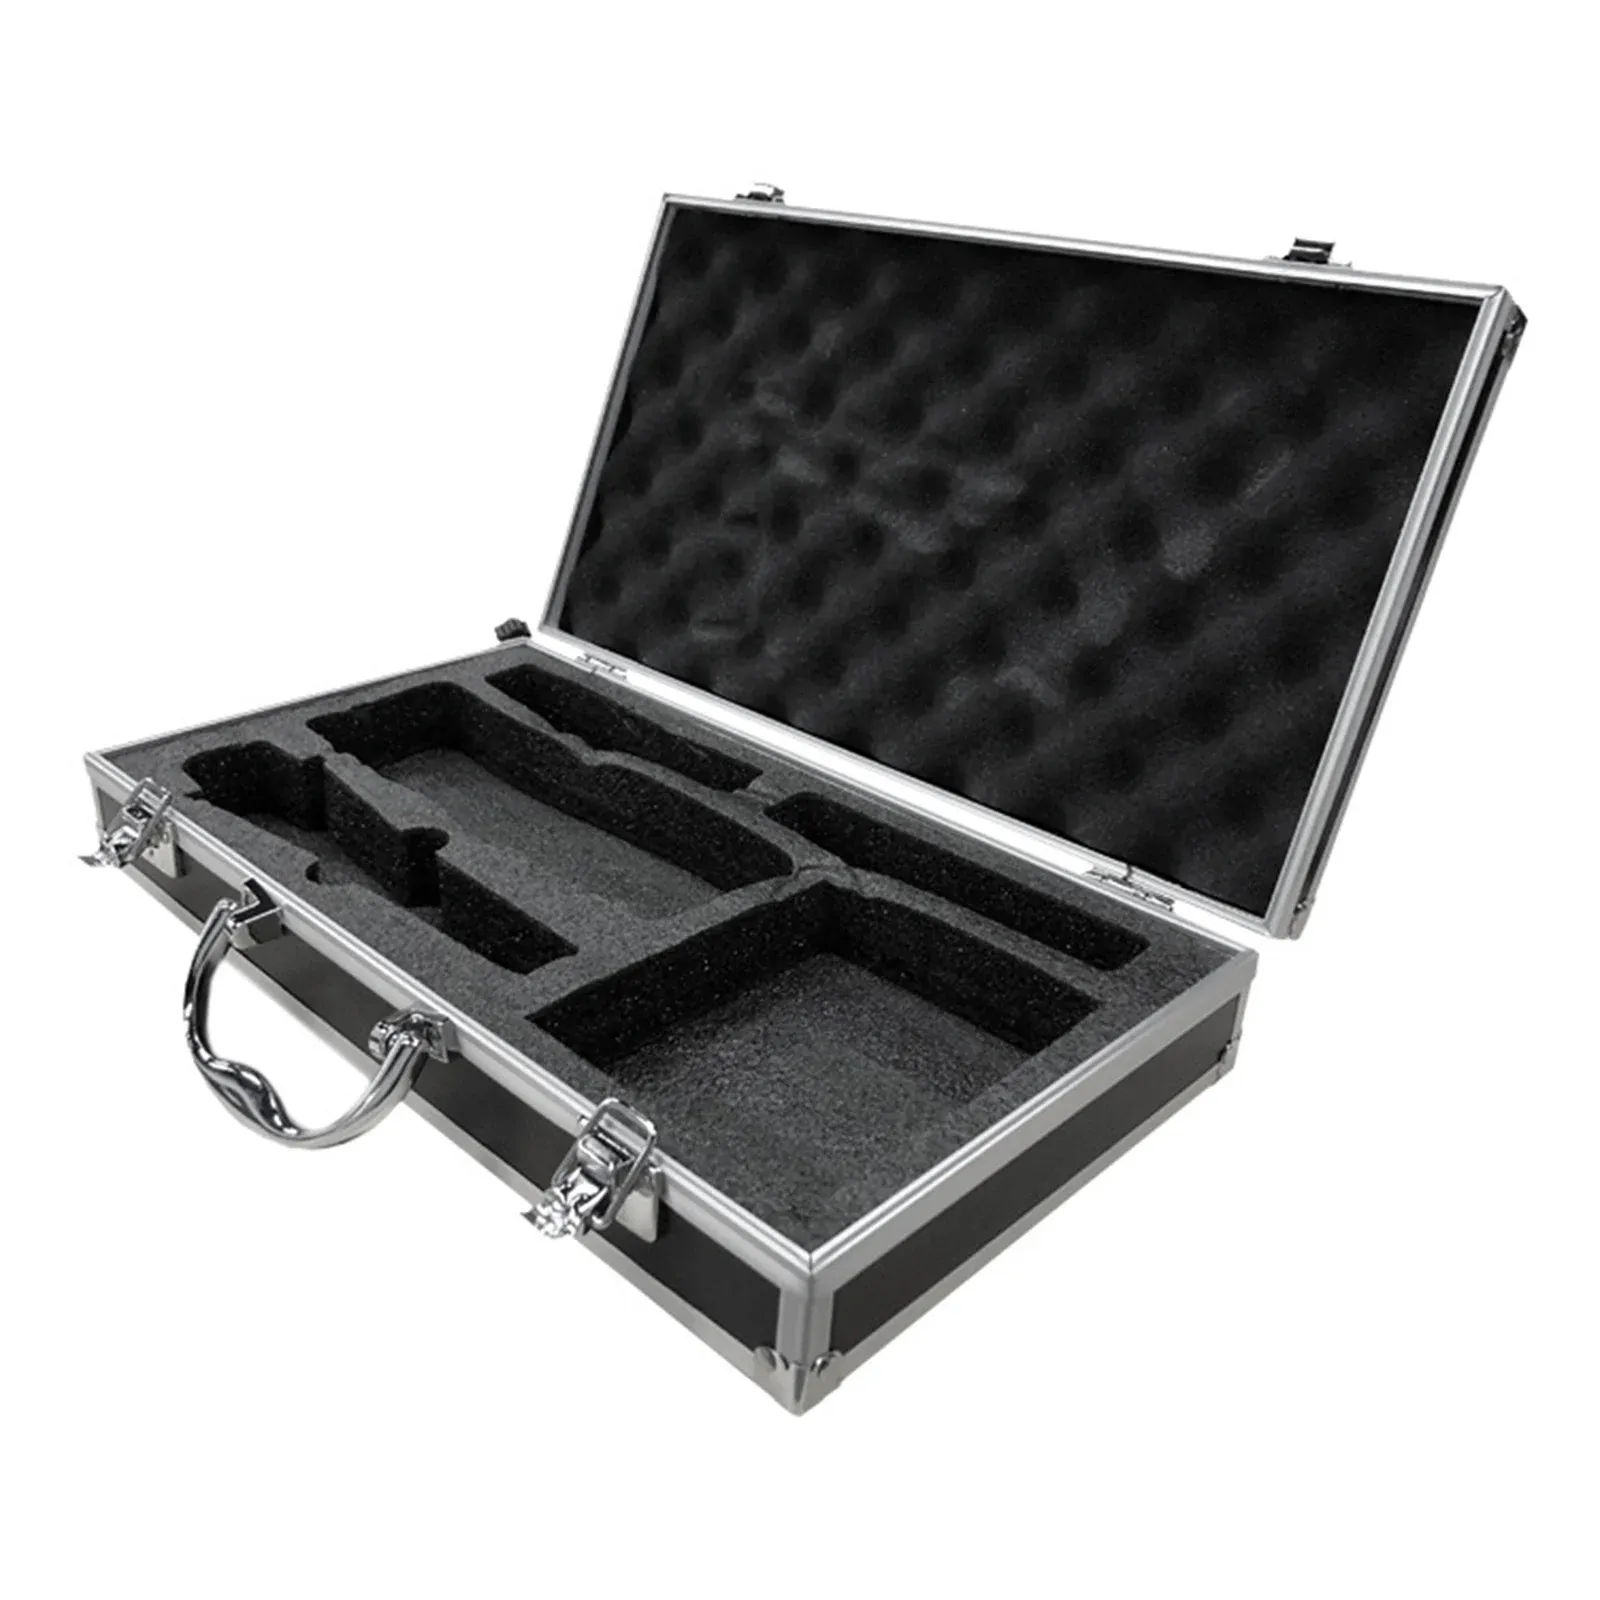 Instrument draadloze microfoon draagtas harde shell instrument doos met sponscompartiment voor microfoon geluidskaartmixeraccessoires